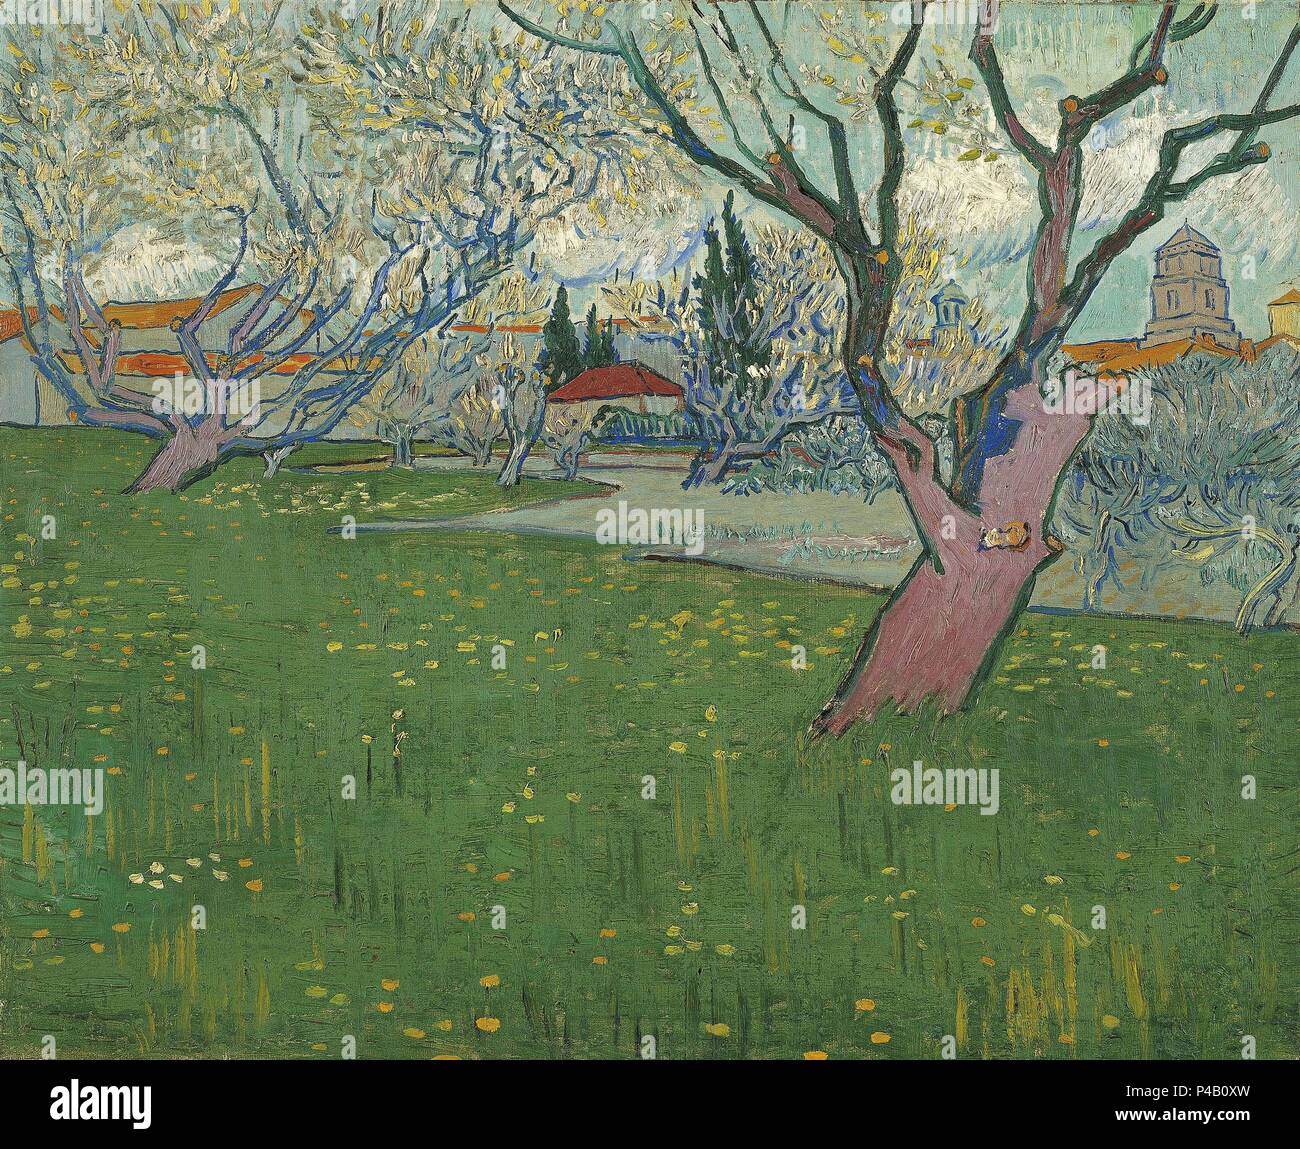 Niederländische Schule. Blühender Obstgarten in Arles. 1889. Öl auf Leinwand (50,5 x 65 cm). Amsterdam, Van Gogh Museum. Autor: Vincent van Gogh (1853-1890). Ort: Van Gogh Museum, Amsterdam, HOLANDA. Stockfoto